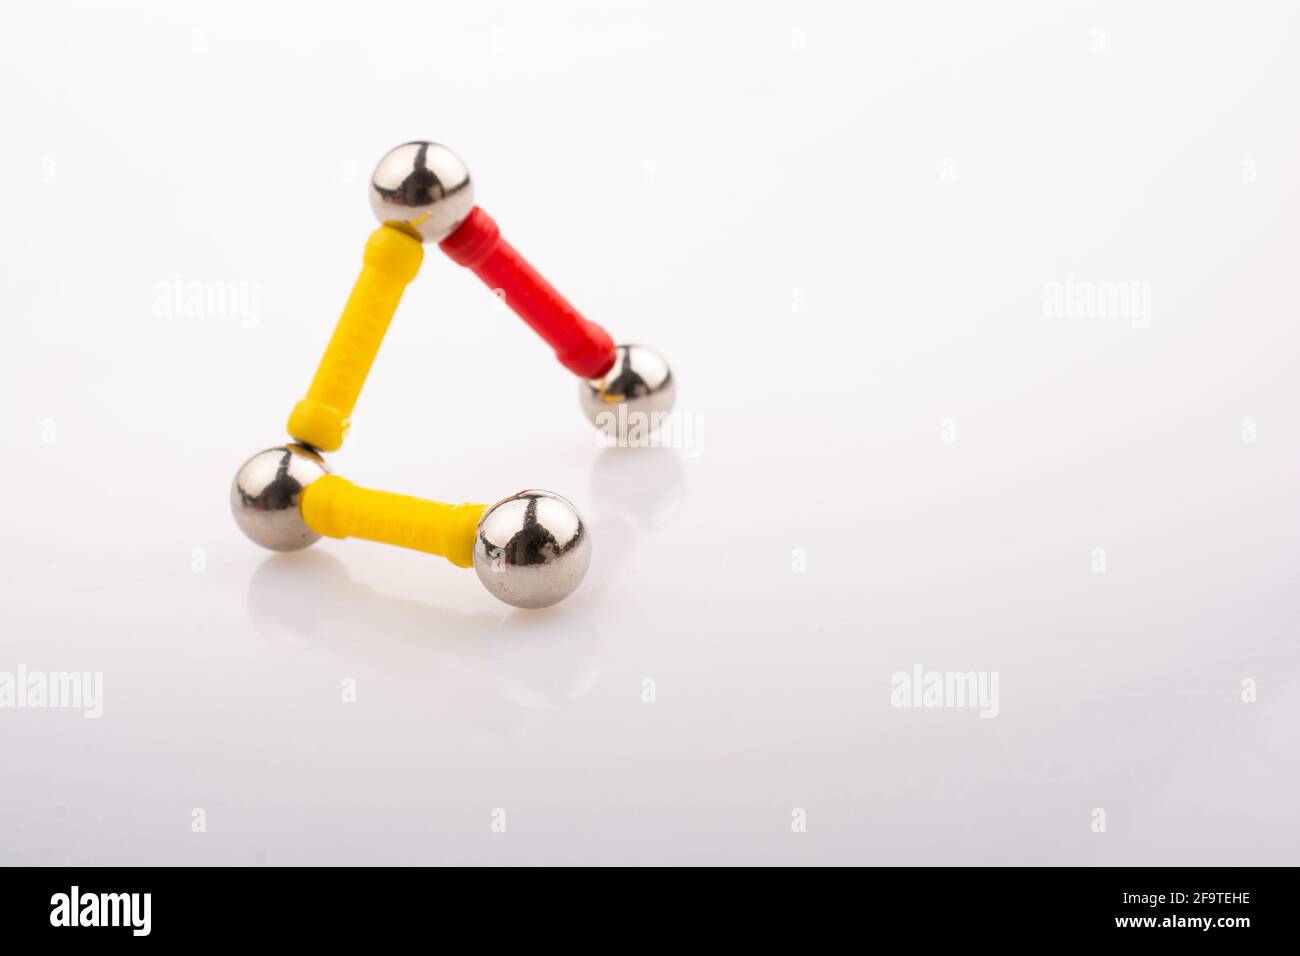 Magnet Spielzeug bars und magnetische Kugeln auf einem weißen Hintergrund  Stockfotografie - Alamy